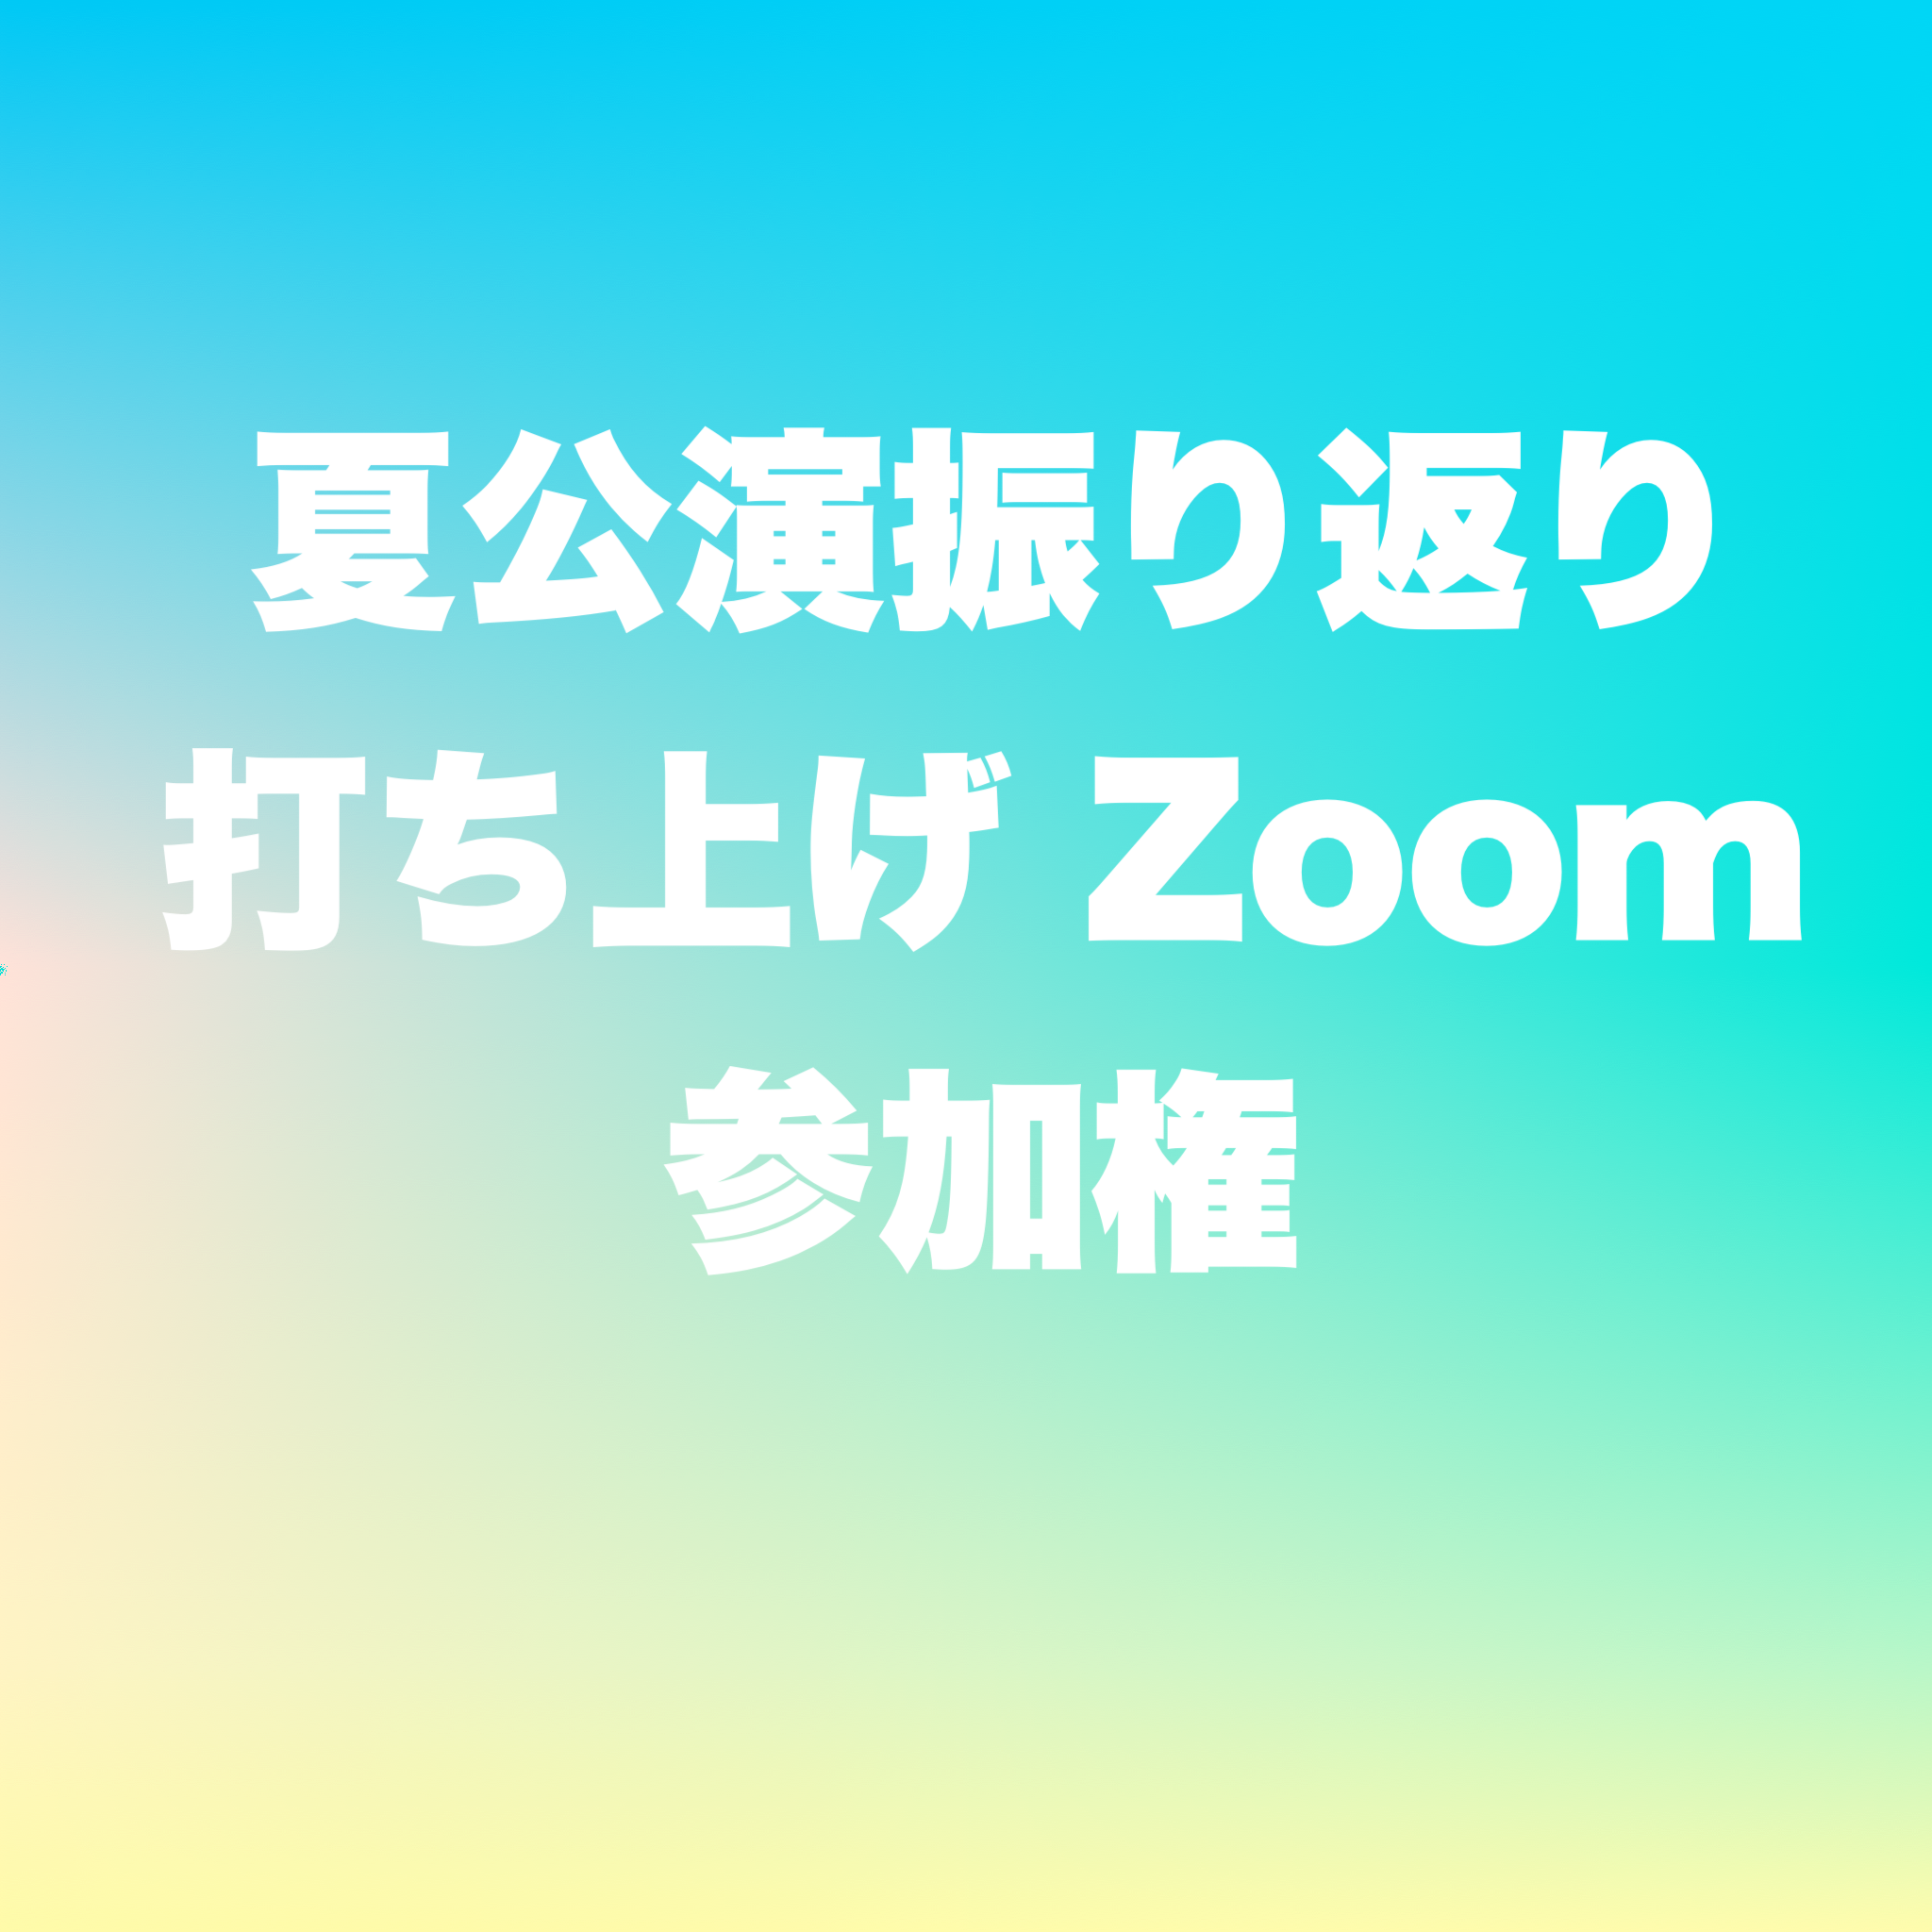 夏公演振り返り打ち上げZoom参加権の画像